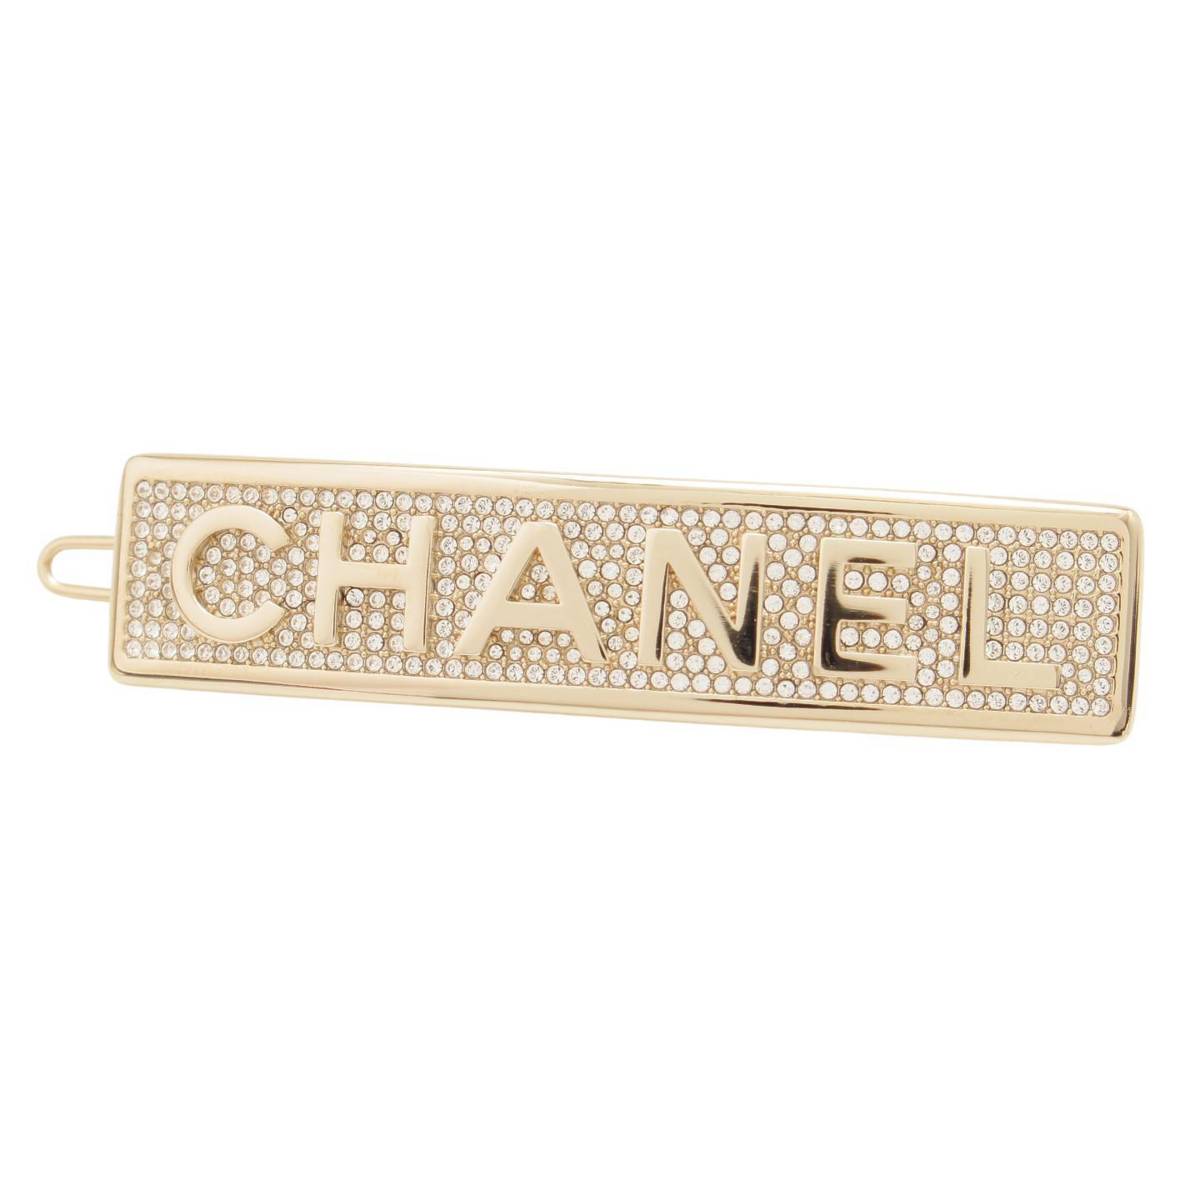 シャネル(Chanel) B21 ヘアクリップ バレッタ AB5651 B02818 ゴールド